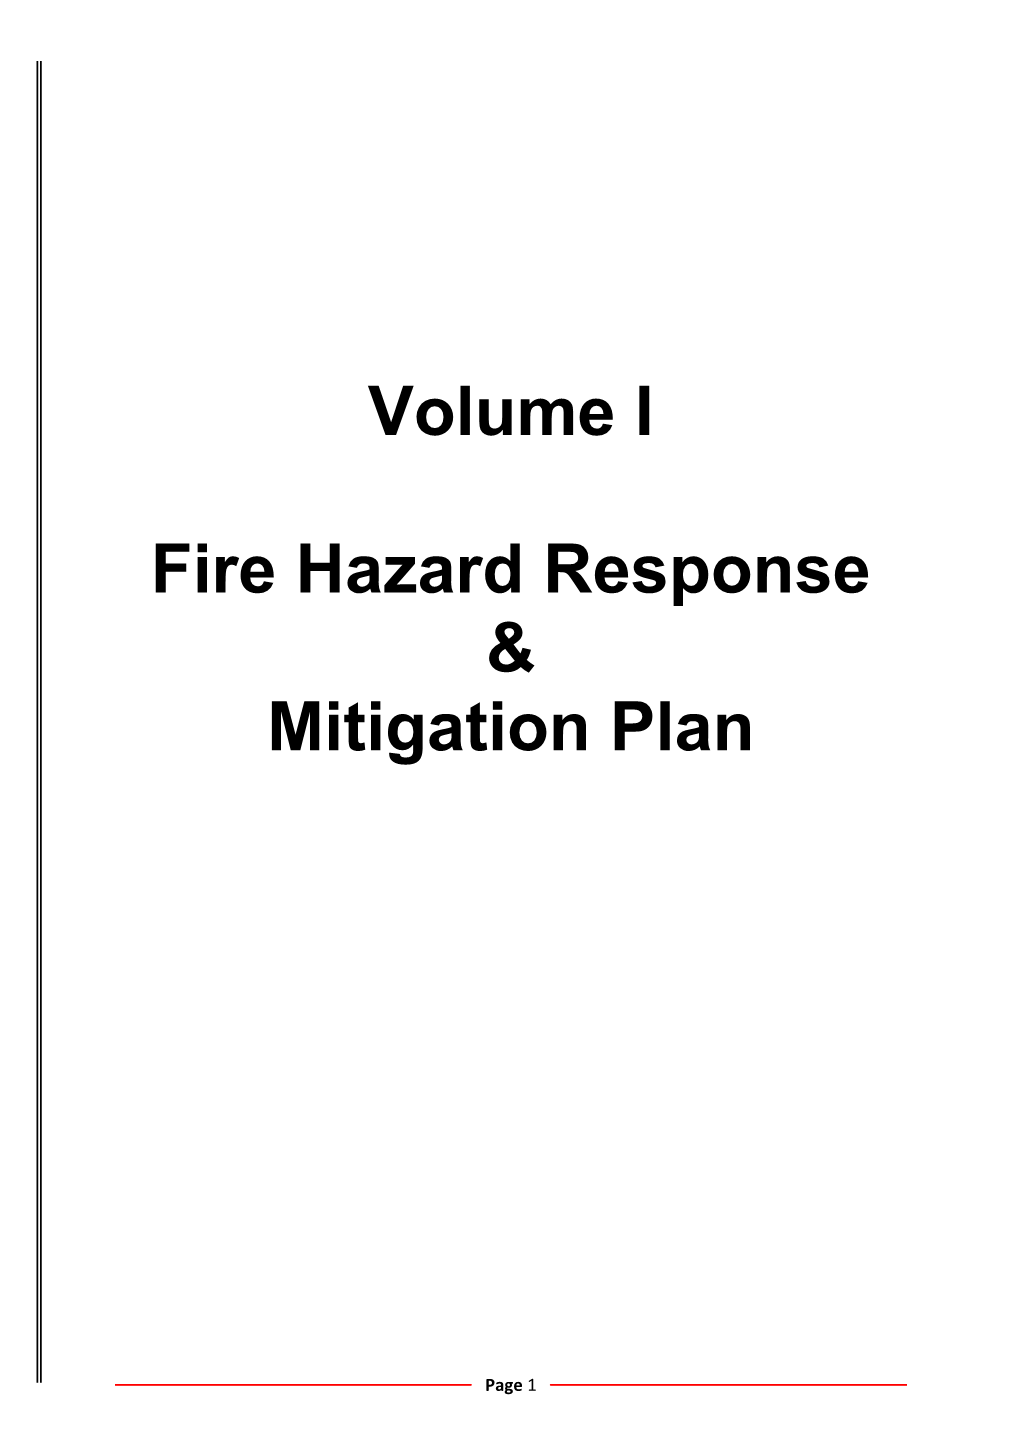 Fire Hazard Response & Mitigation Plan